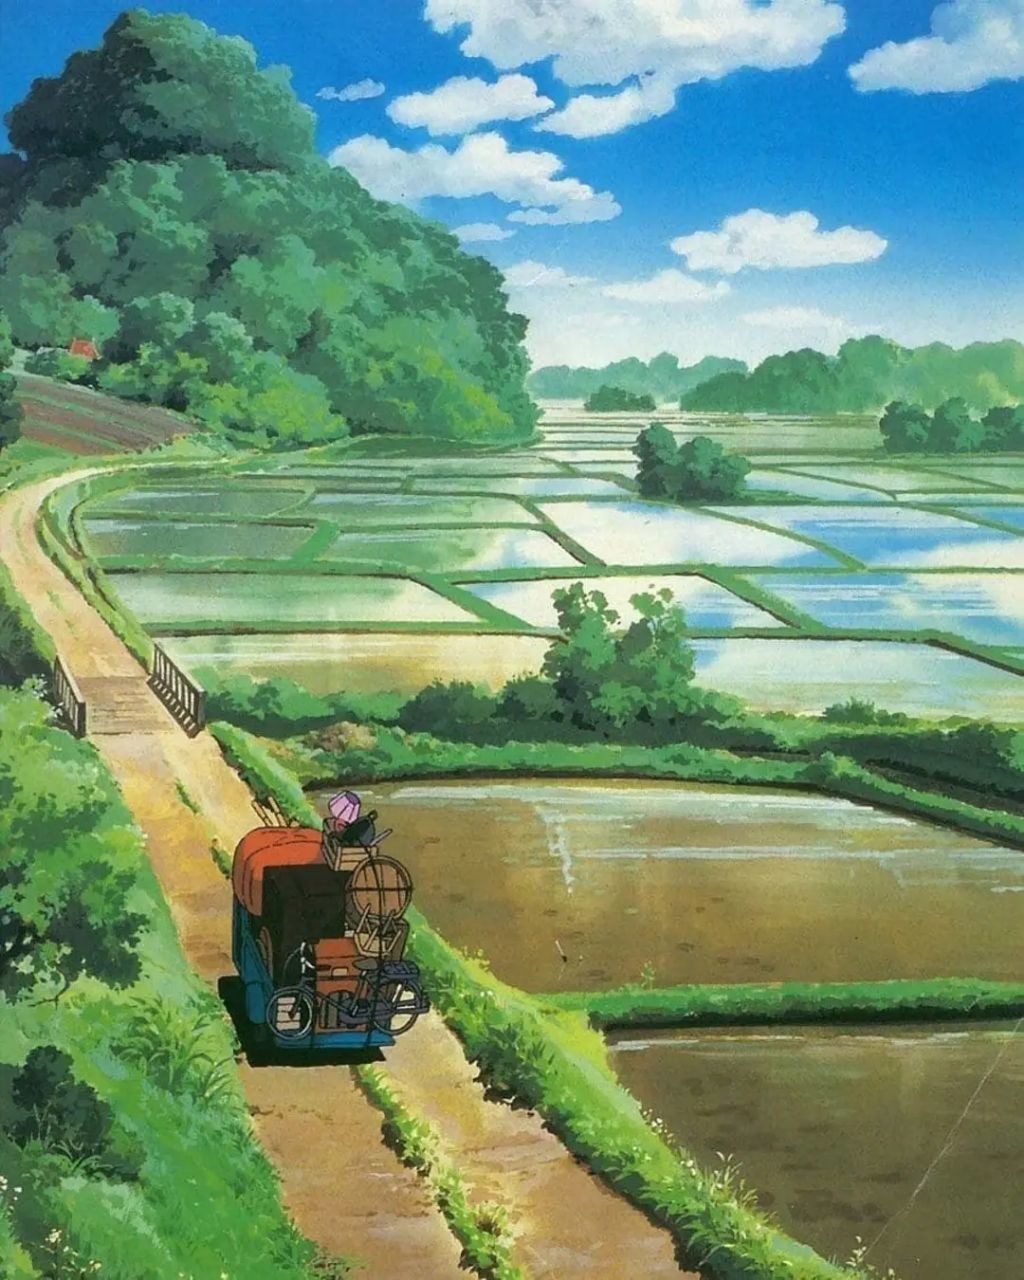 Hãy thưởng thức những bức tranh vẽ phong cảnh anime đầy màu sắc và tươi mới. Những cánh đồng rộng lớn, những ngọn núi cao vút, cùng những con suối nhỏ nhưng đầy mạnh mẽ - tất cả được tái hiện chân thật trong những bức tranh anime này. Hãy trầm mình vào không gian đầy huyền bí của anime và cảm nhận một thế giới đẹp tuyệt vời.